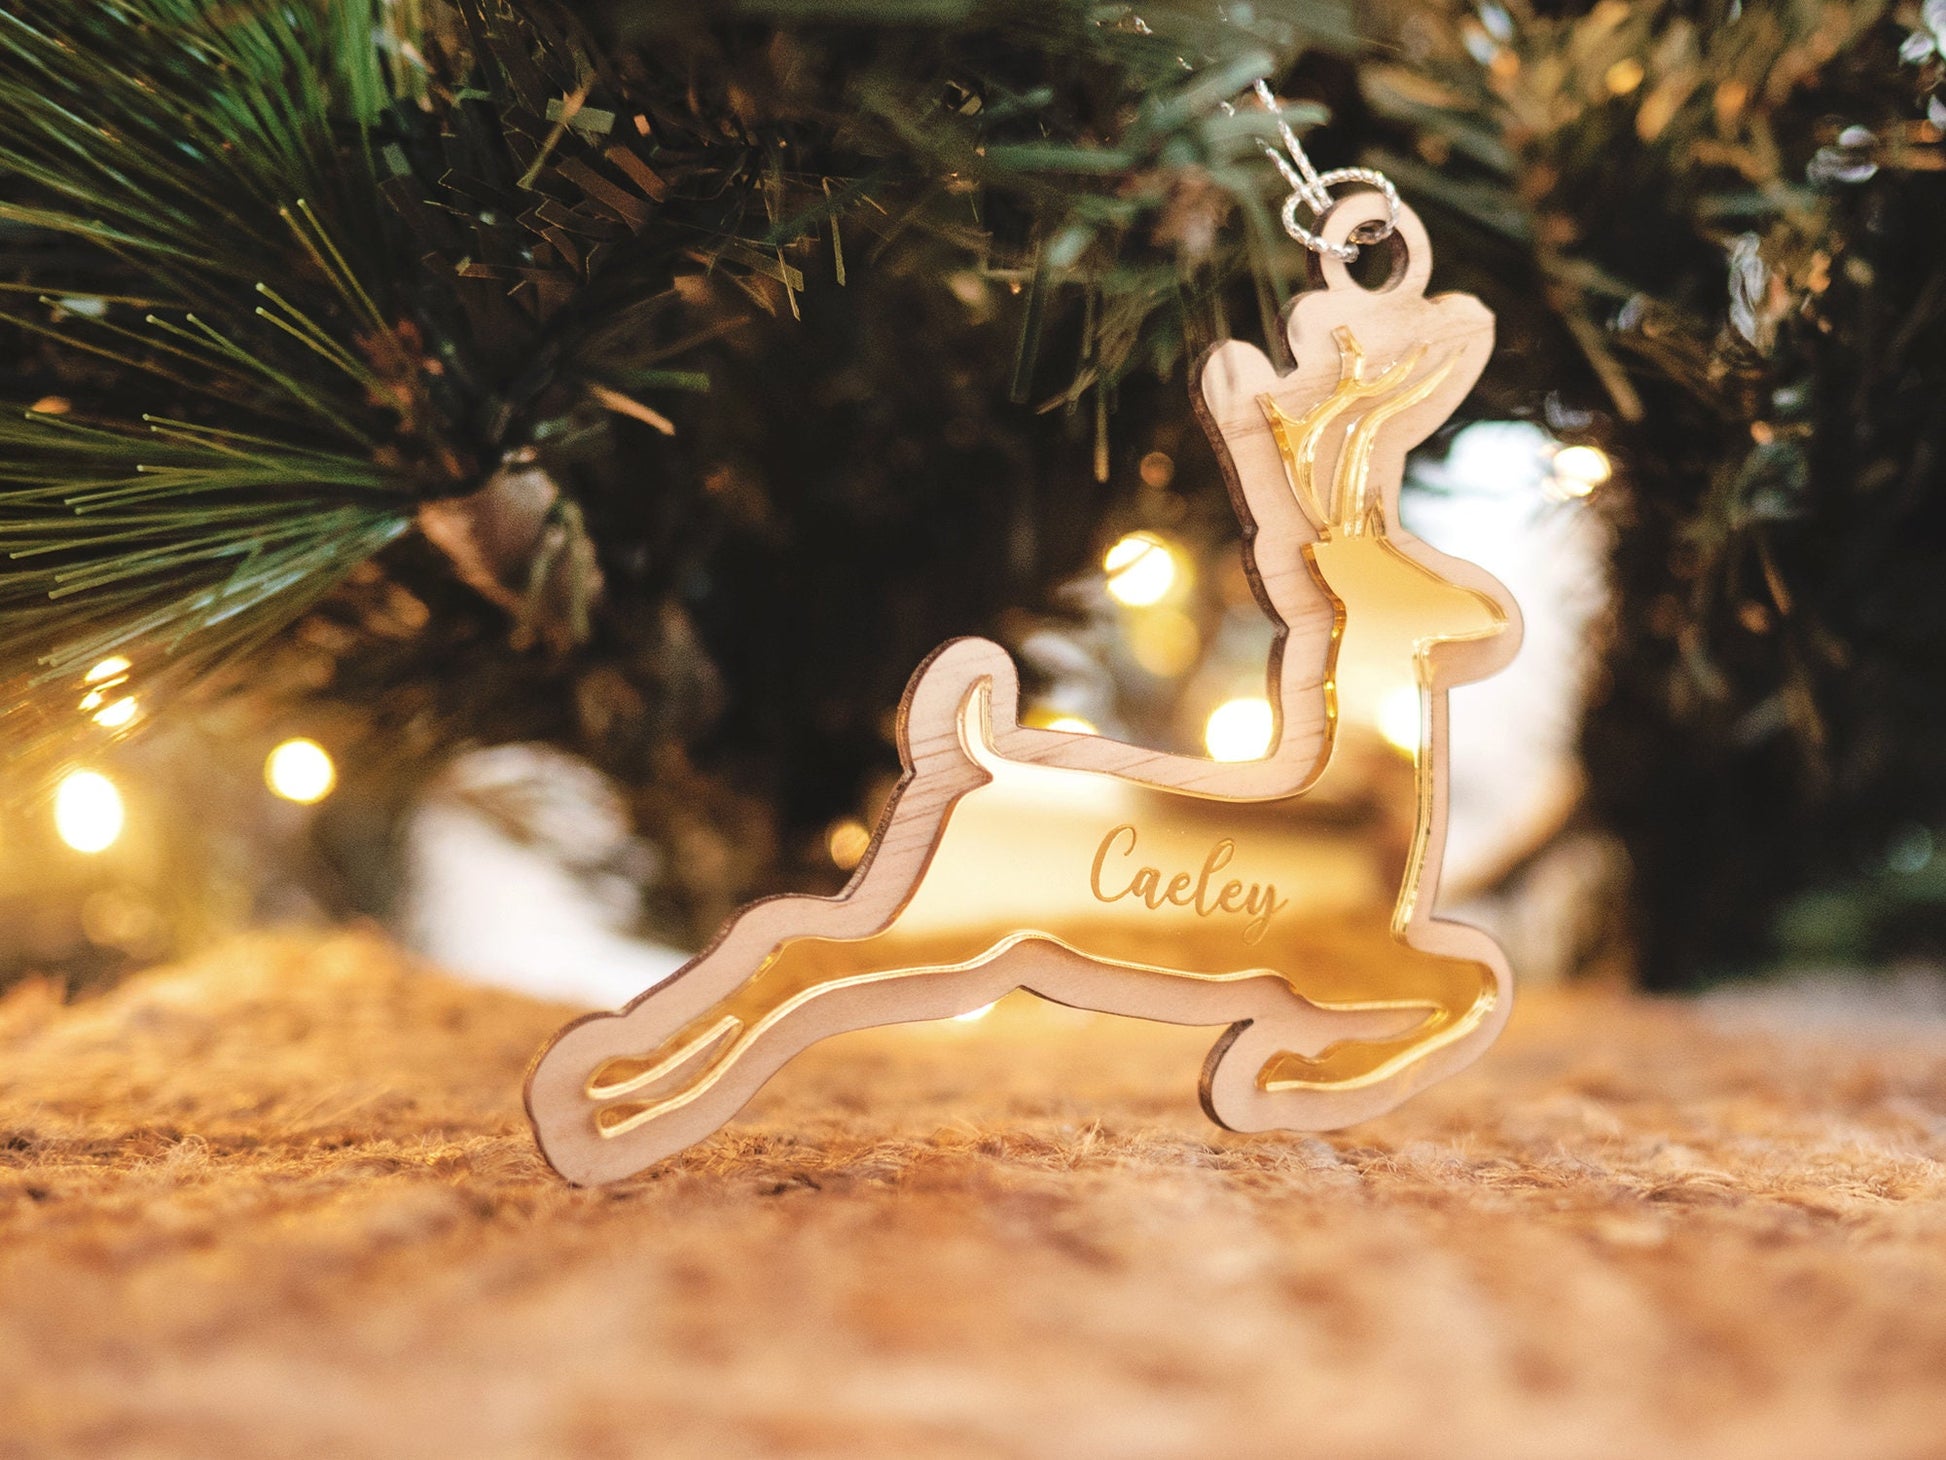 Reindeer Ornament - Personalised Reindeer Ornament, Wooden Ornament, Christmas Reindeer Ornament, Tree ornament, Deer Ornament